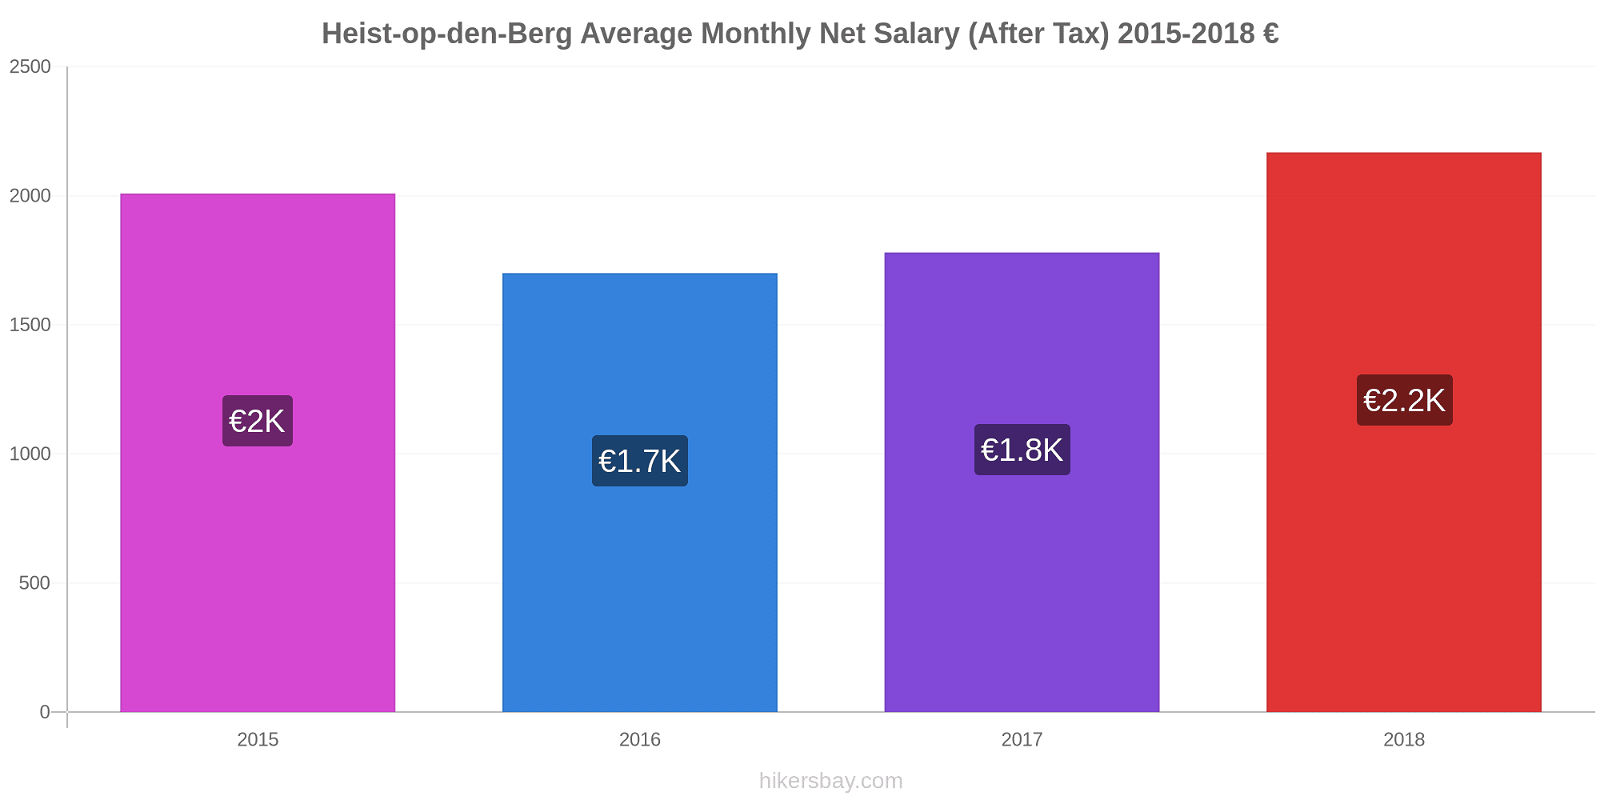 Heist-op-den-Berg price changes Average Monthly Net Salary (After Tax) hikersbay.com